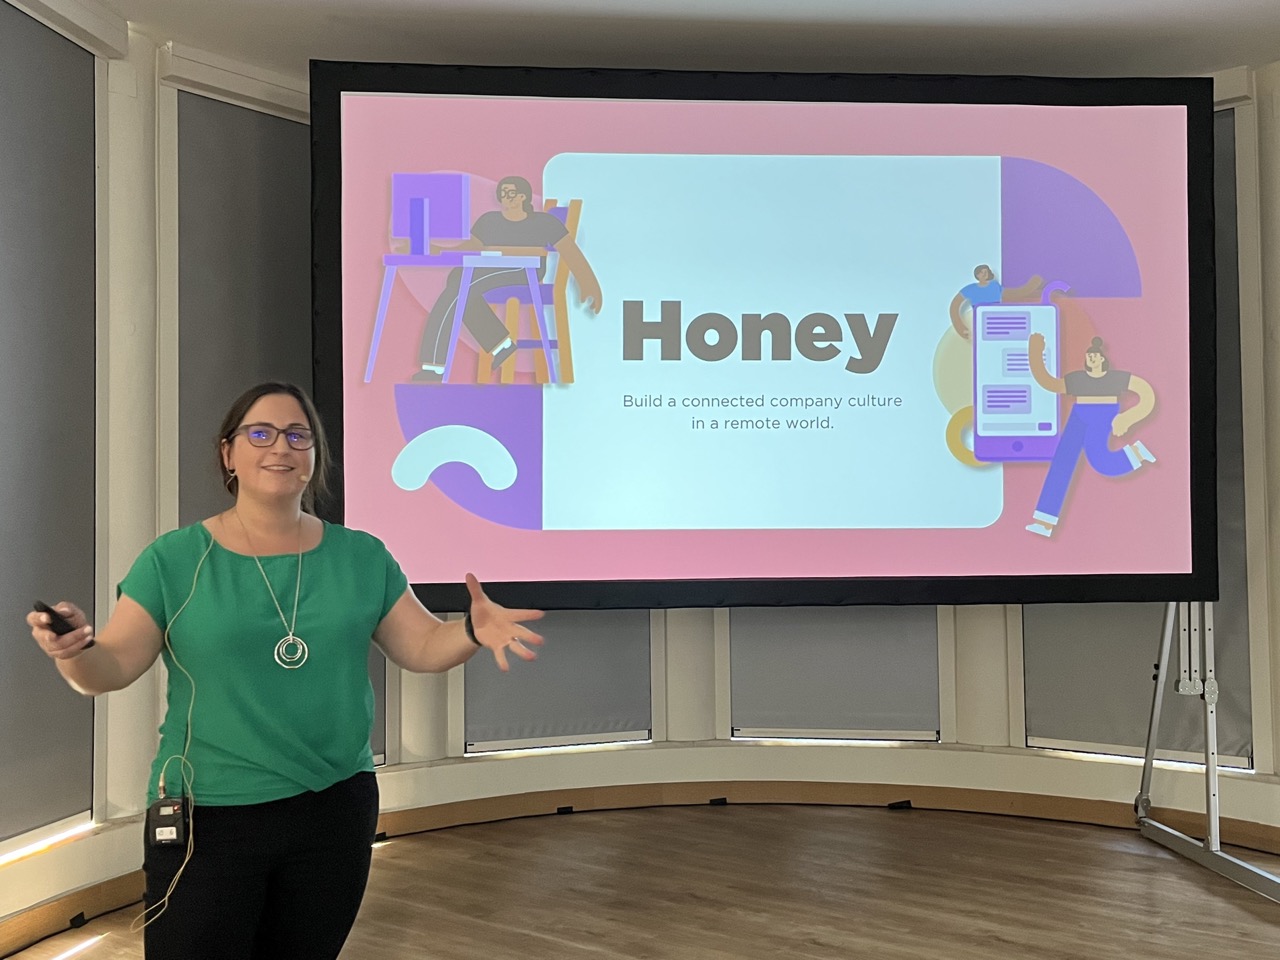 Honey CEO Rachel giving a presenation